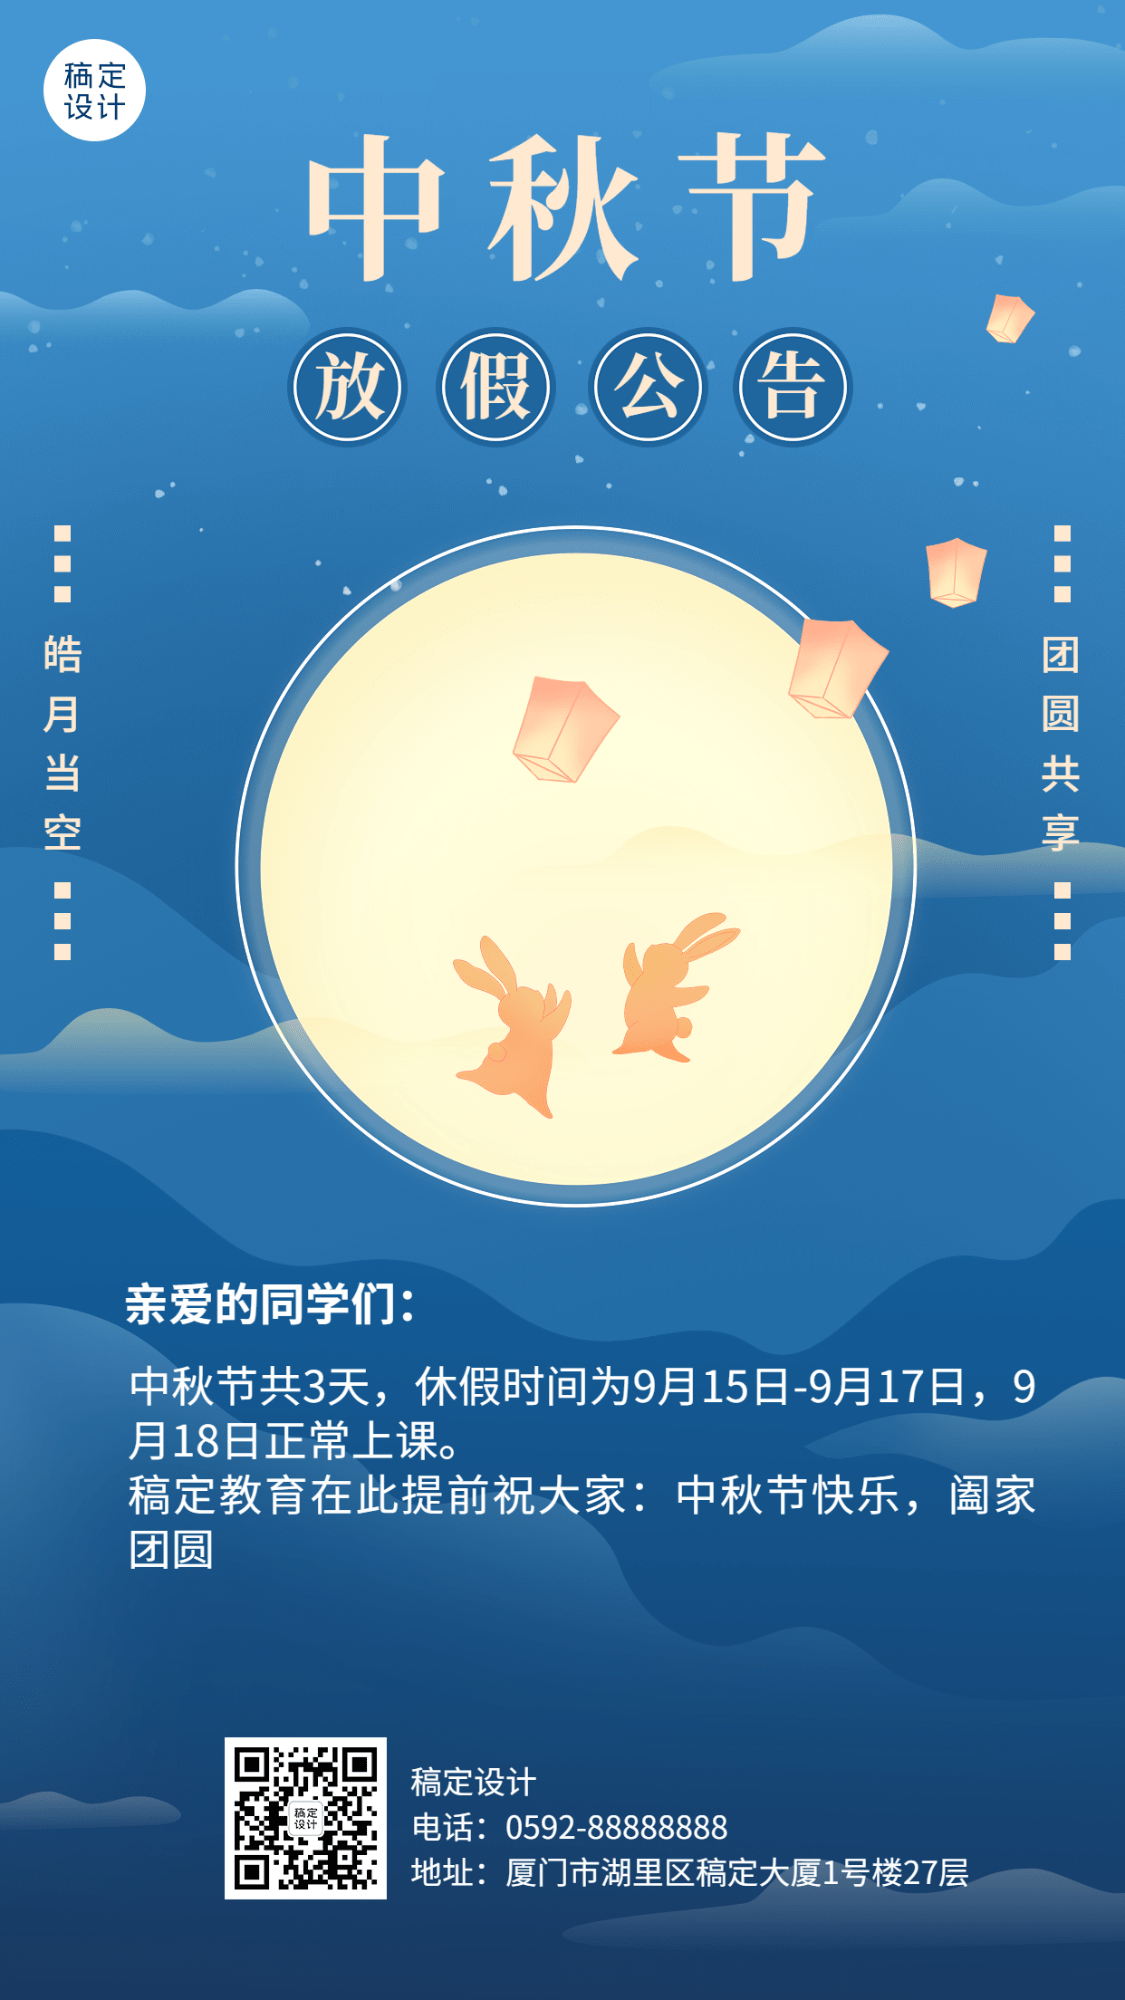 中秋节教育培训节日放假通知插画手机海报